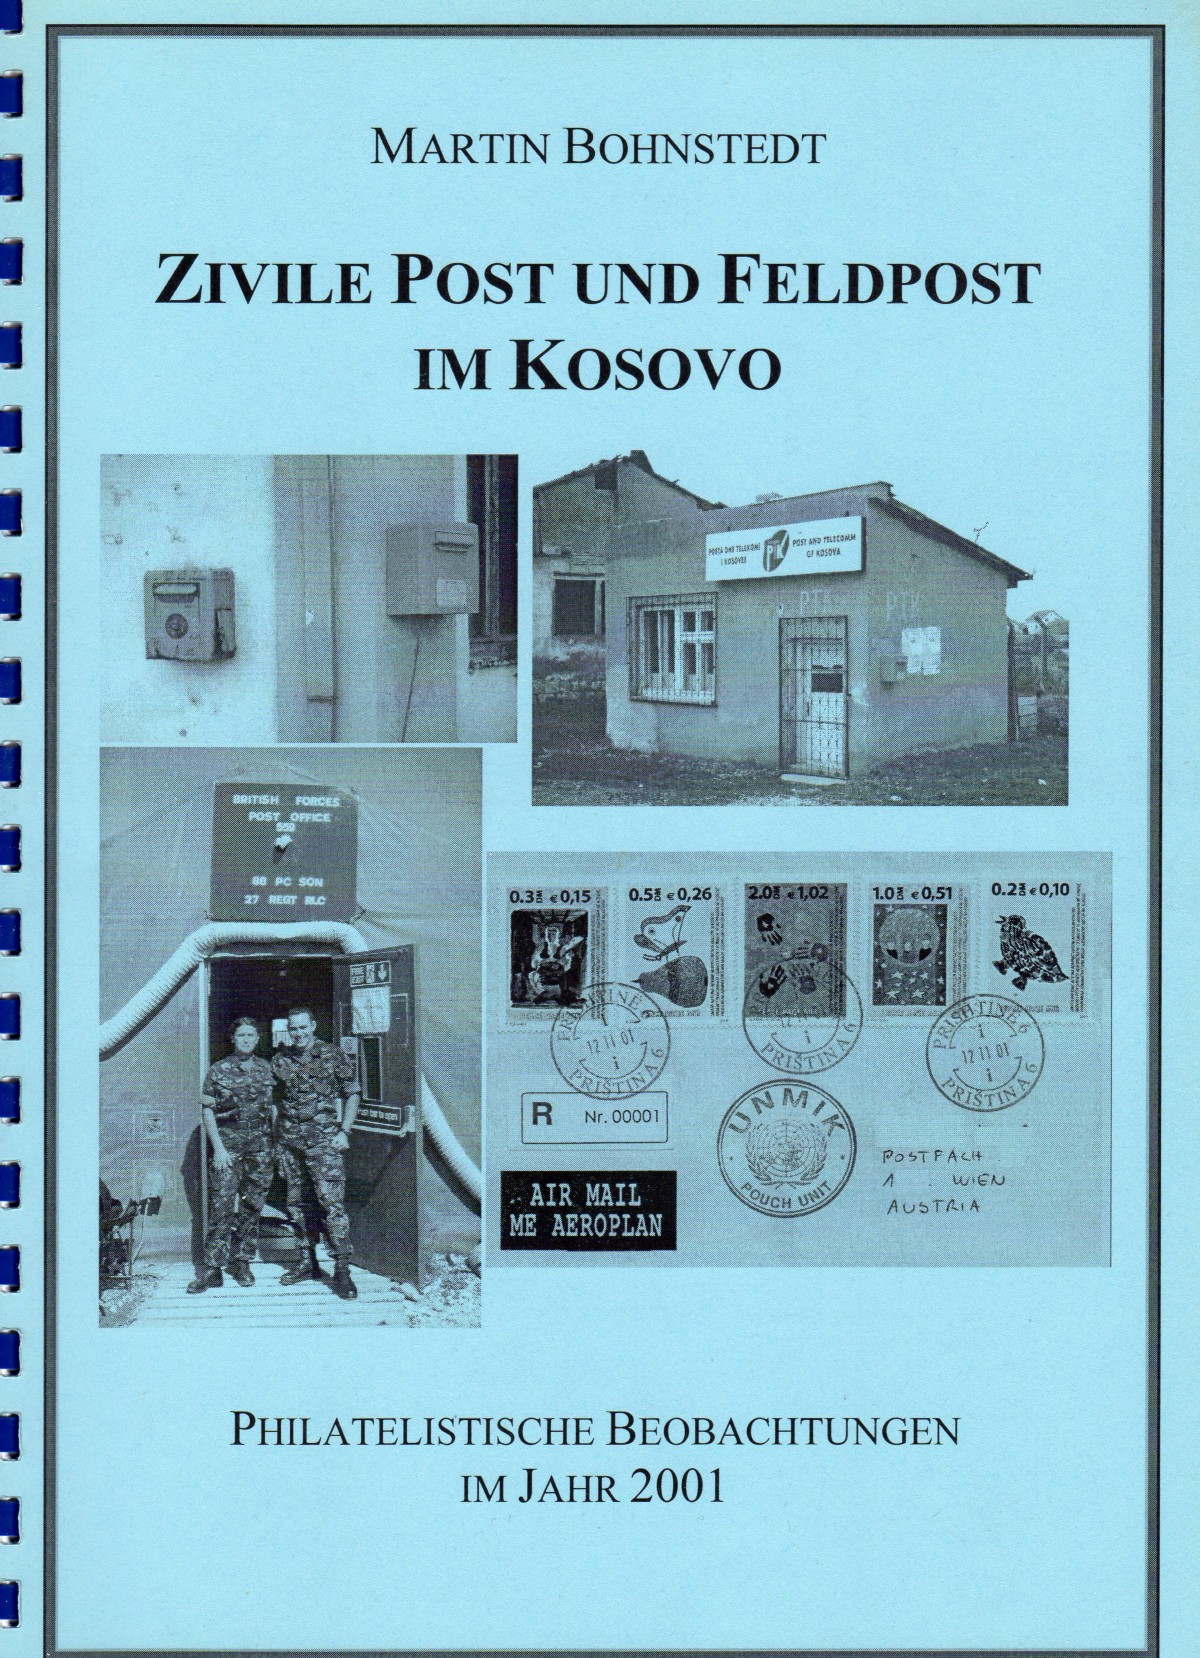 Zivile Postund Feldpost im Kosovo, Martin Bohnstedt